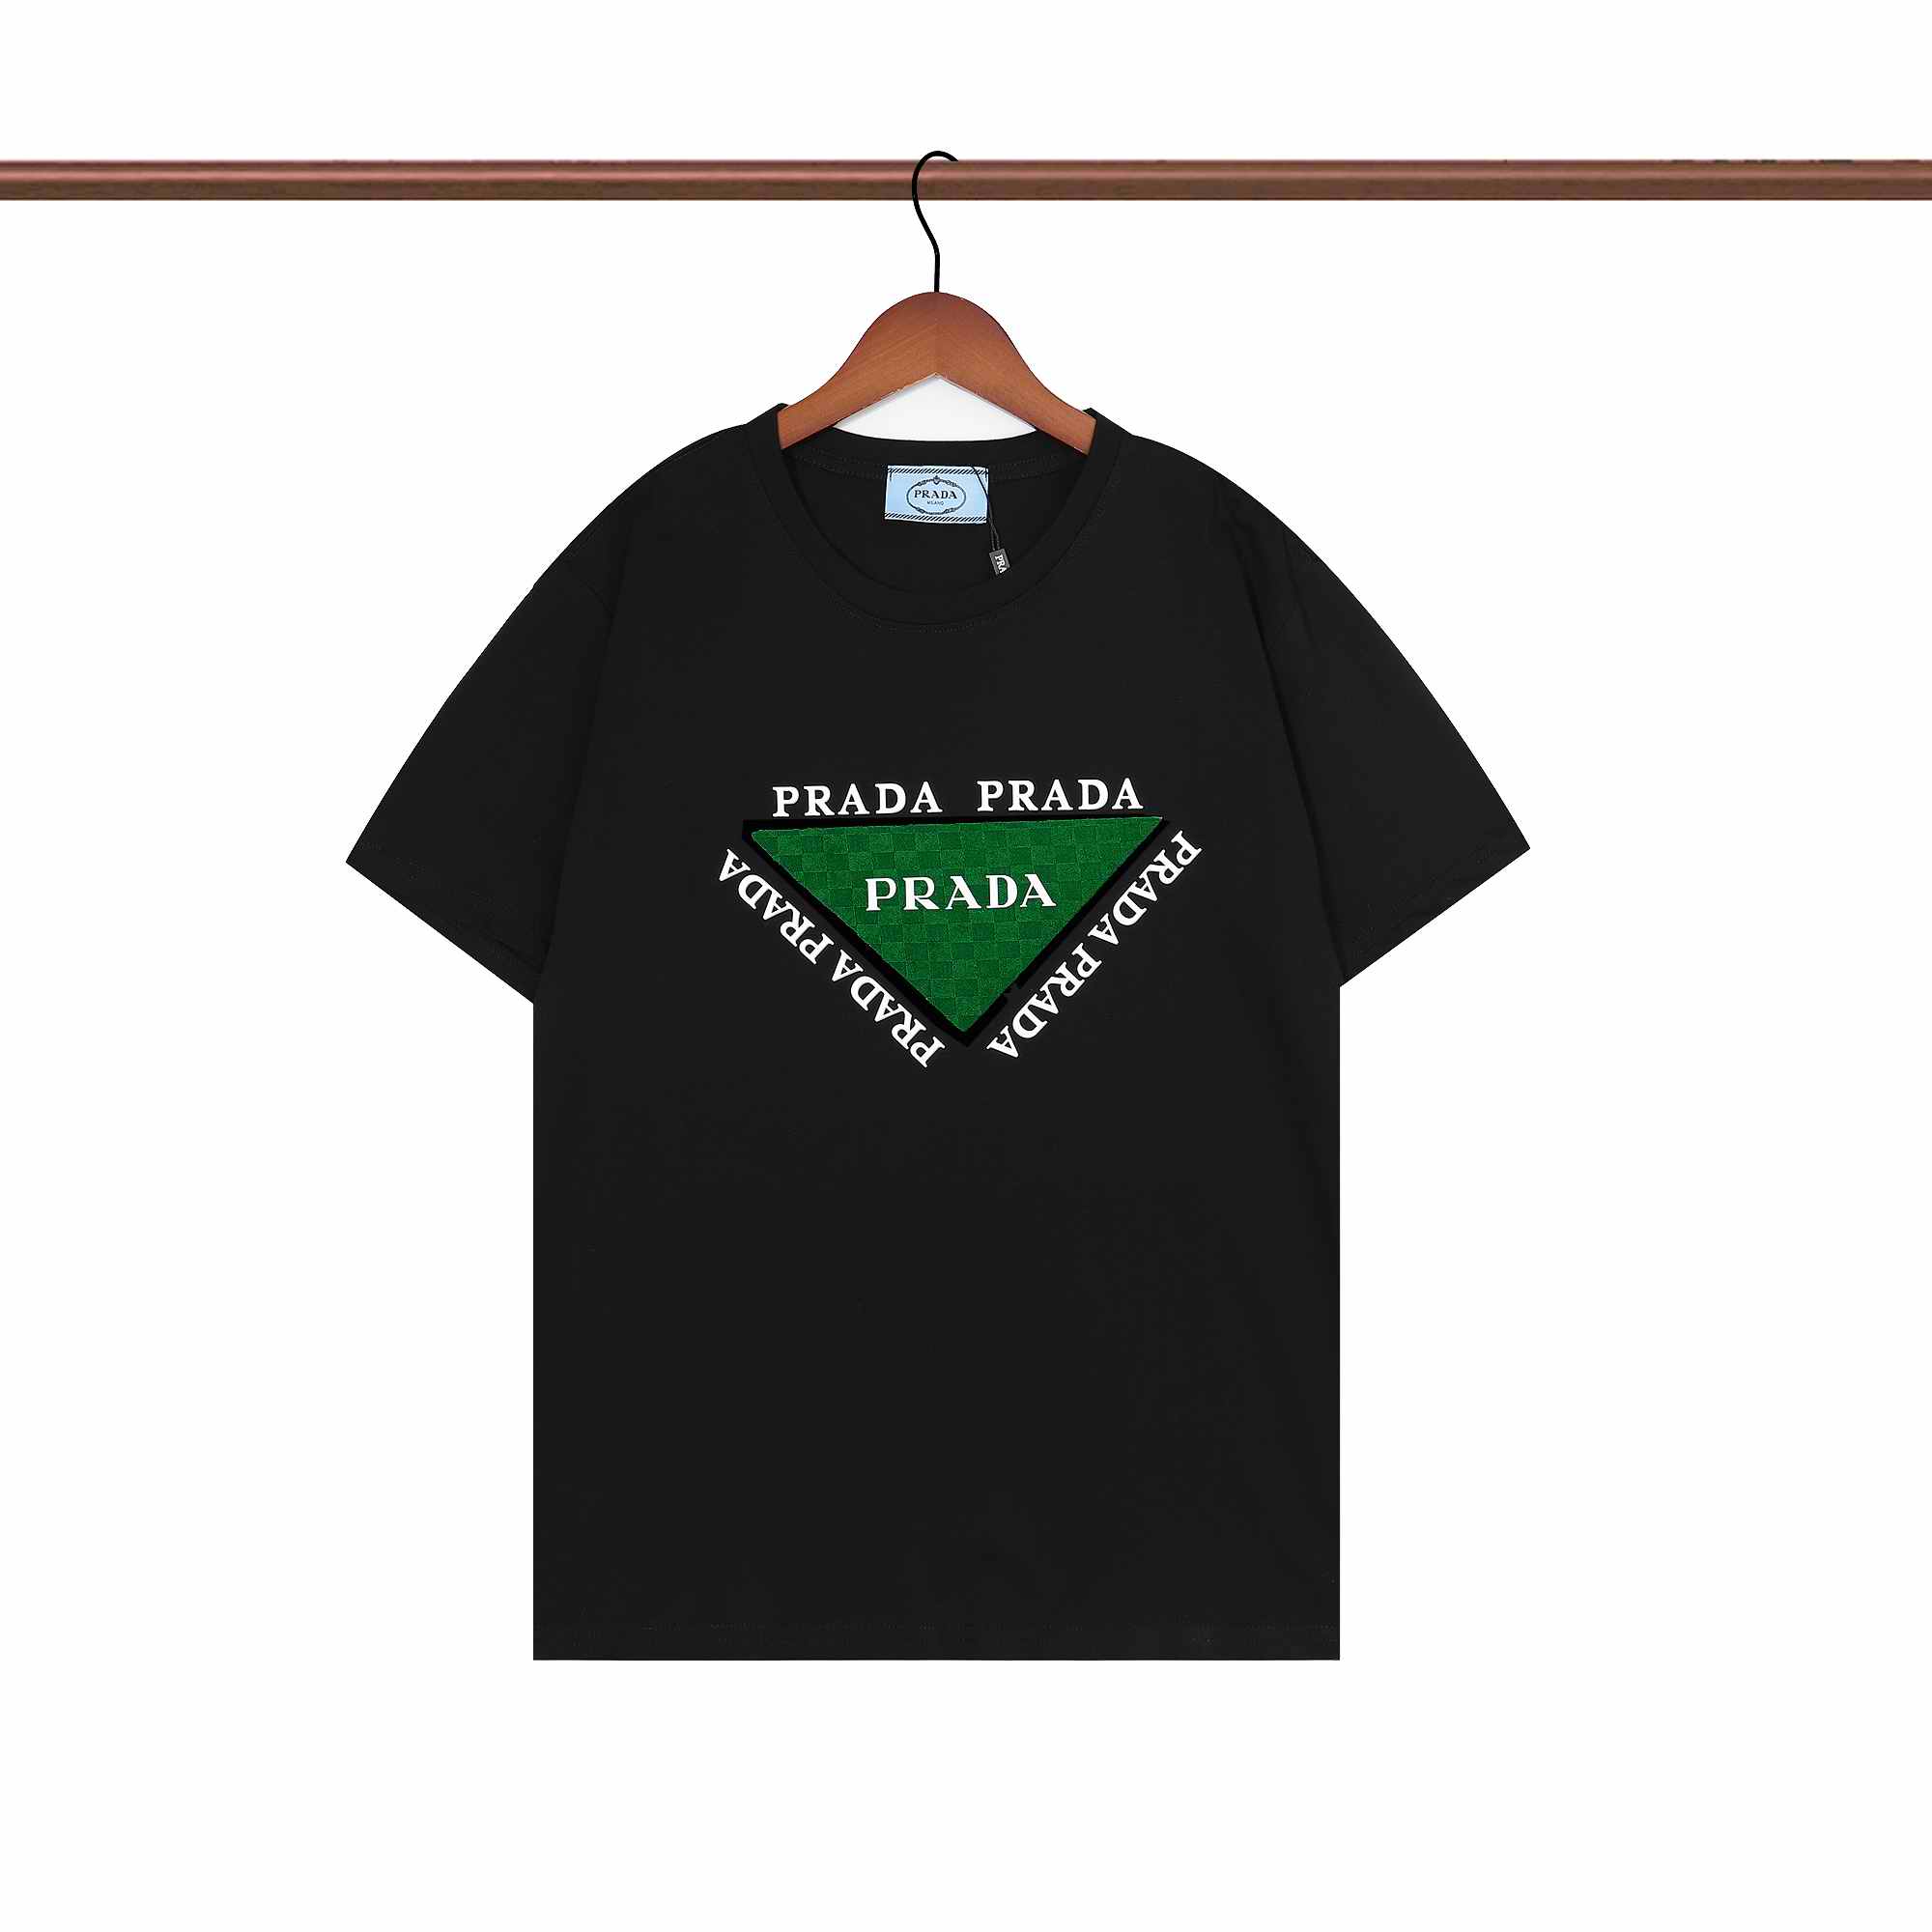  Prada Shirts 009